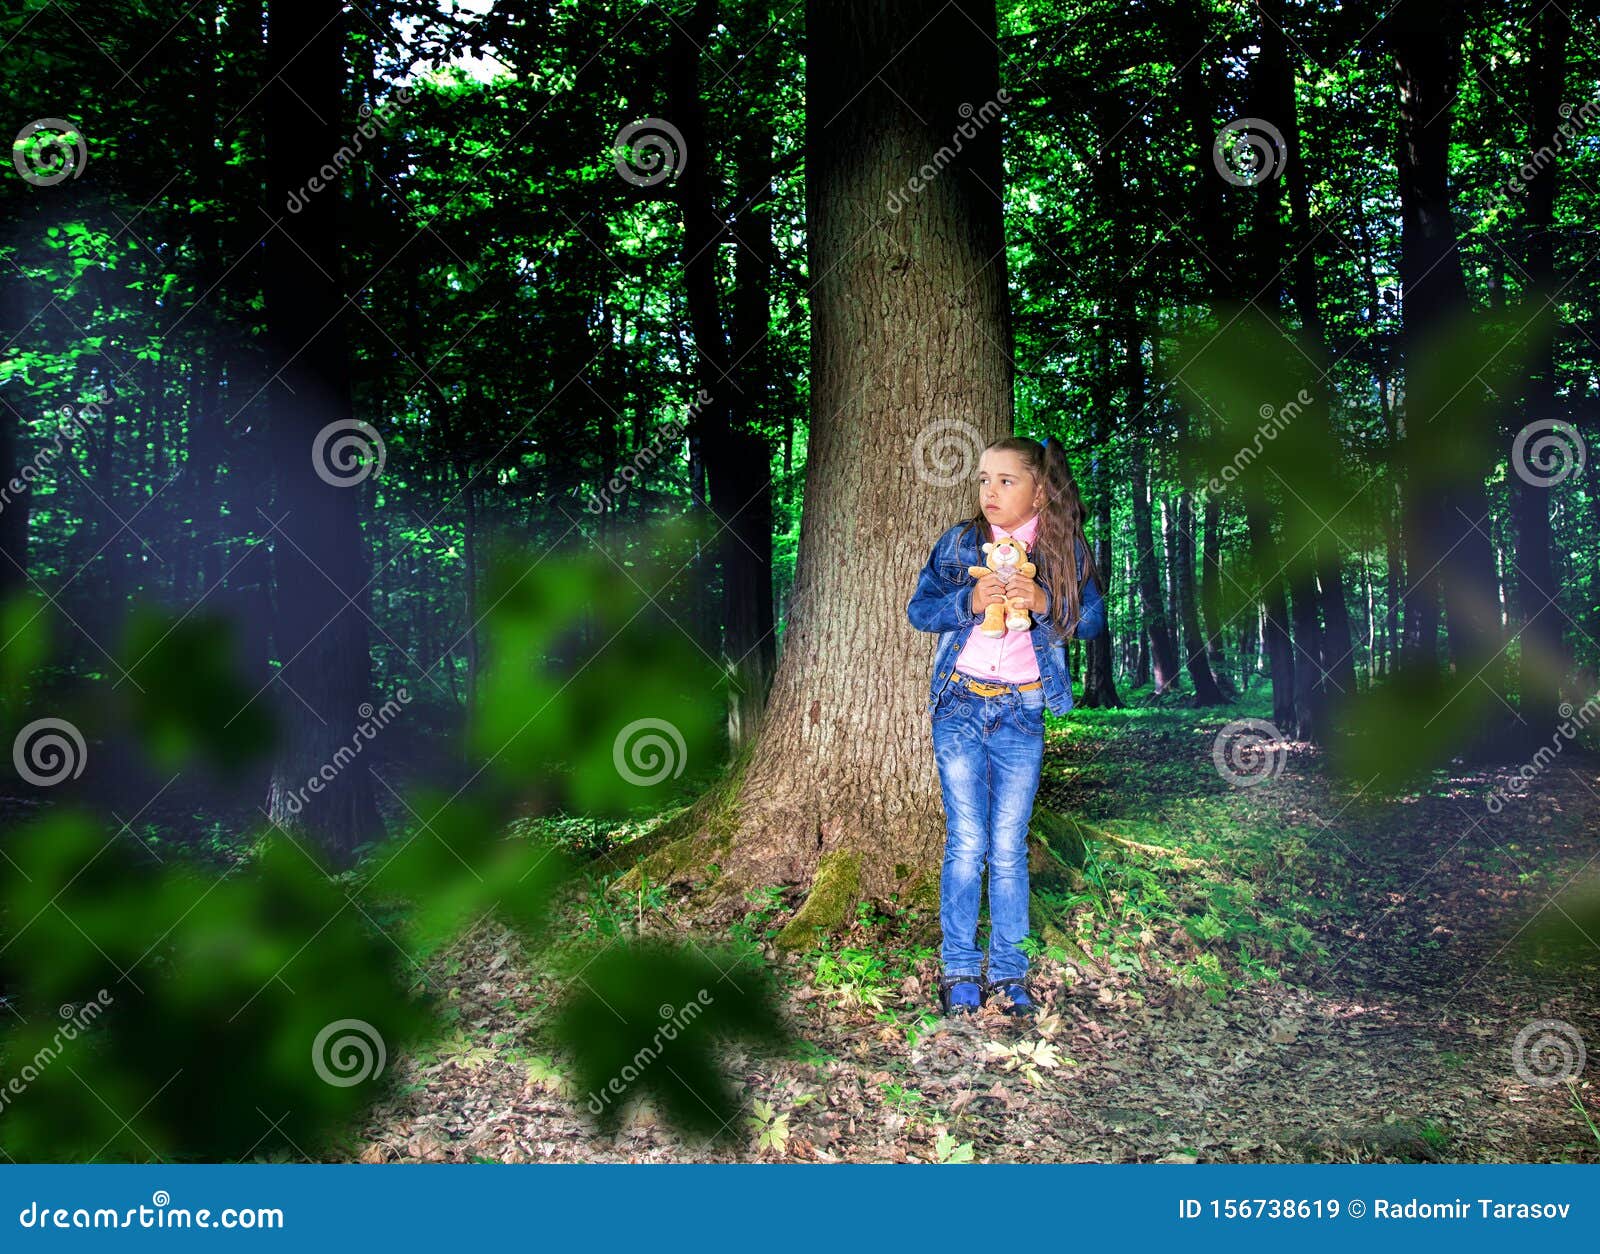 Включи девочку в лесу. Испуганная девочка в лесу. Девочка в лесу. Девочка 10 лет в лесу. Девочка 12 лет в лесу.